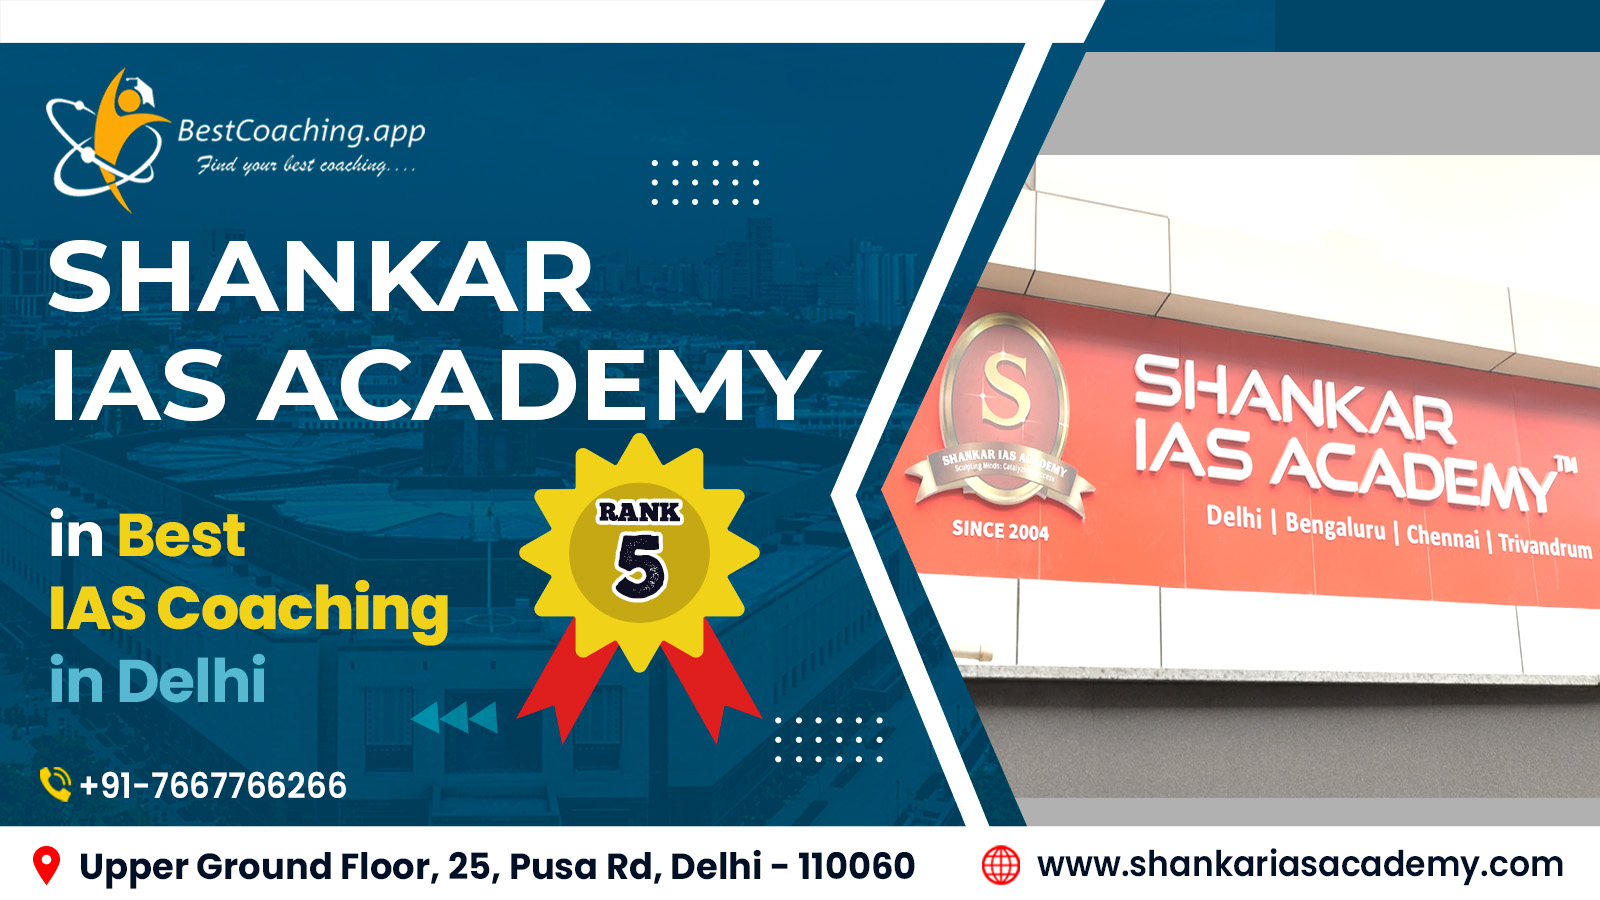 Shankar IAS | Rank 5 in Best IAS Coaching in Delhi